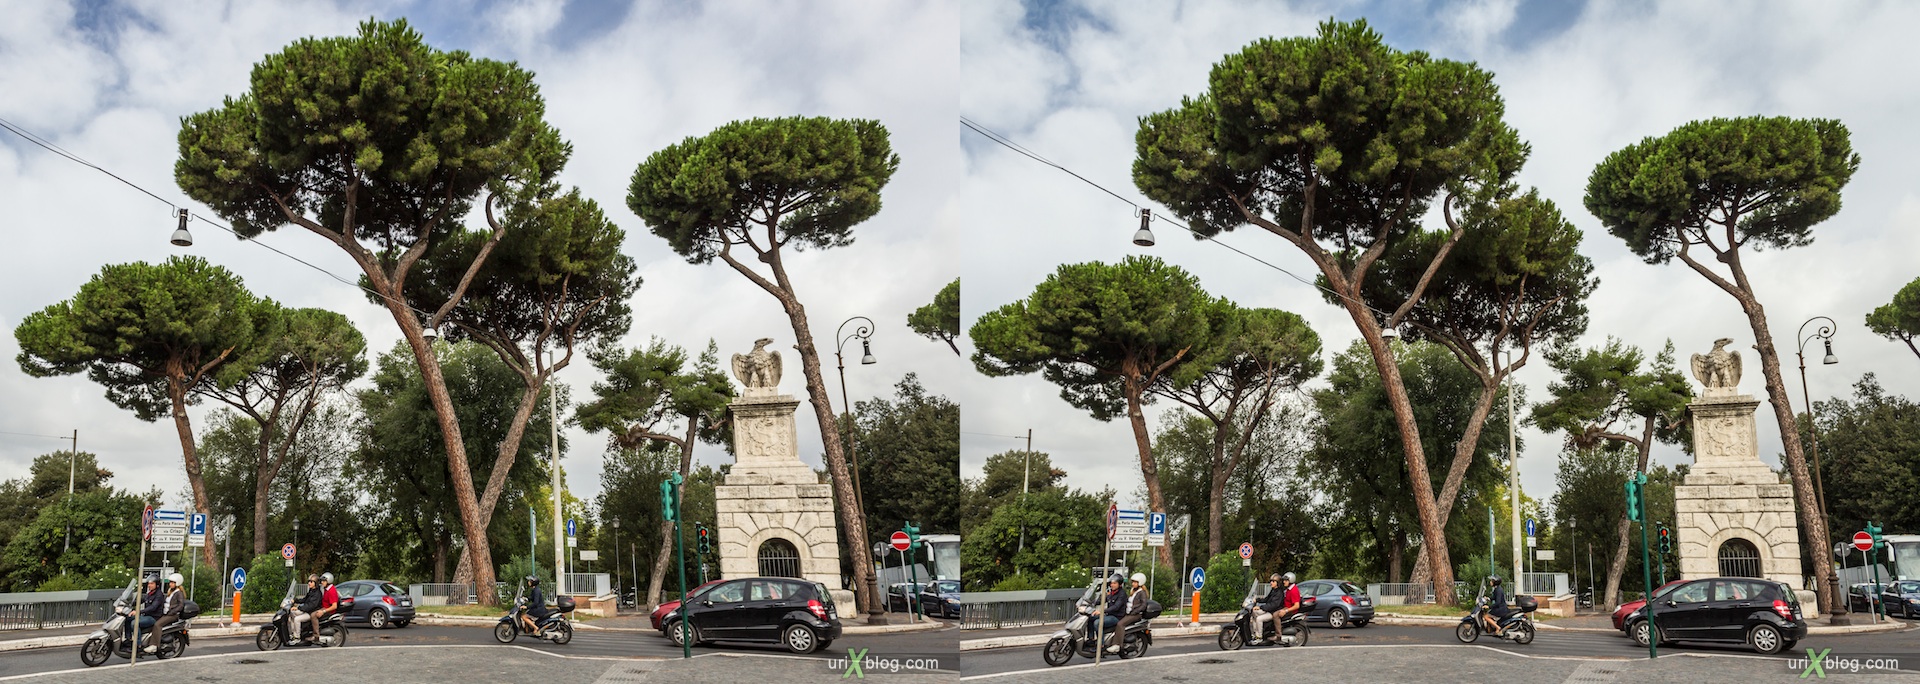 2012, парк вилла Боргезе, Рим, Италия, 3D, перекрёстные стереопары, стерео, стереопара, стереопары